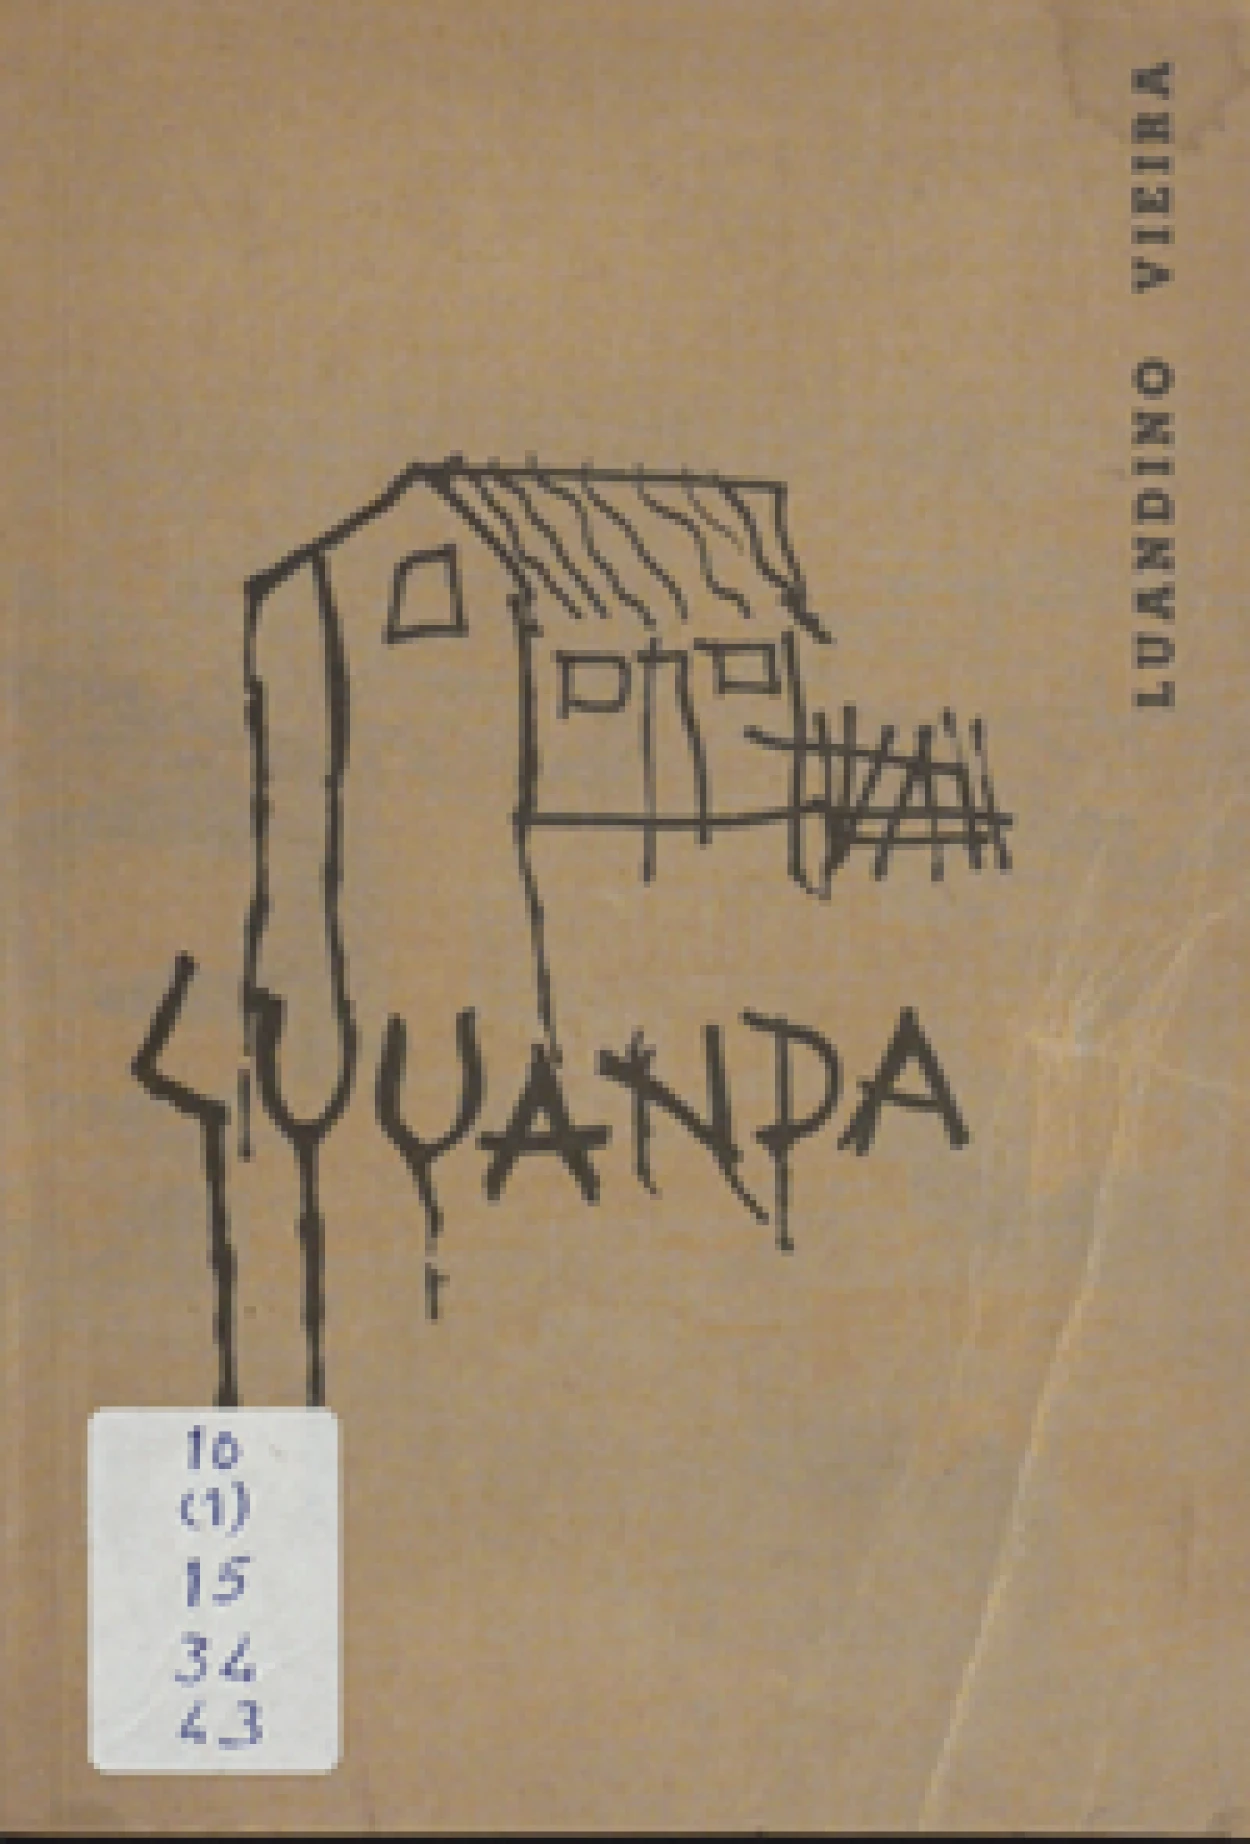 José Luandino Vieira, pseud.
Luuanda.
Luanda : [s.n.], 1963.